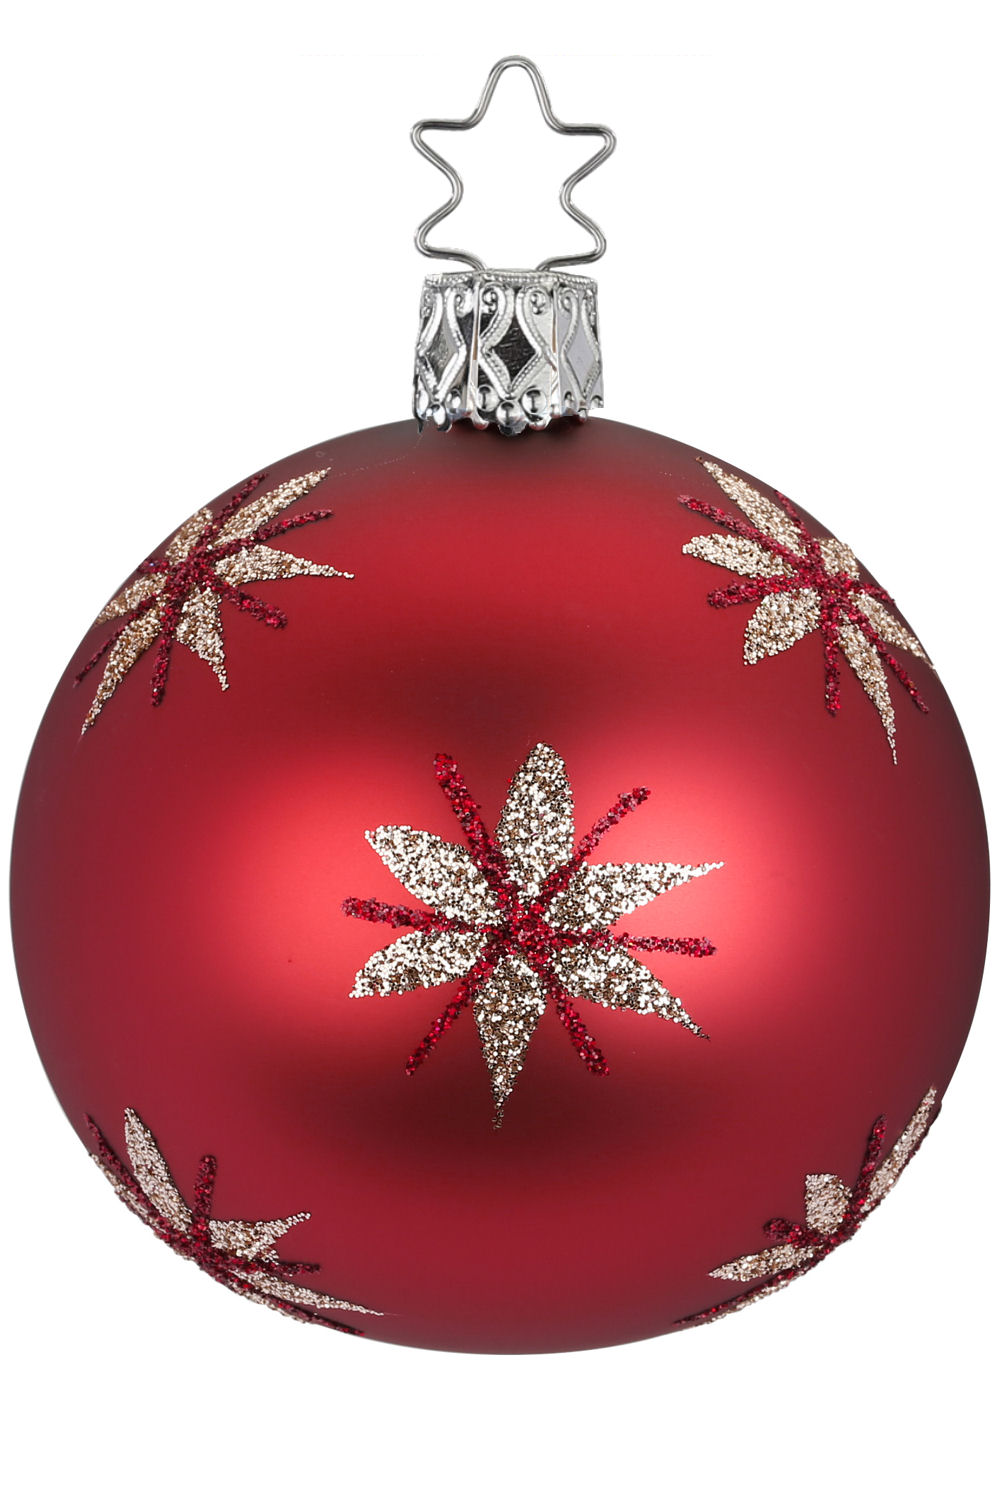 6cm FROHE WEIHNACHT KUGEL BALL EUROPEAN BLOWN GLASS MERRY CHRISTMAS ORNAMENT 115 